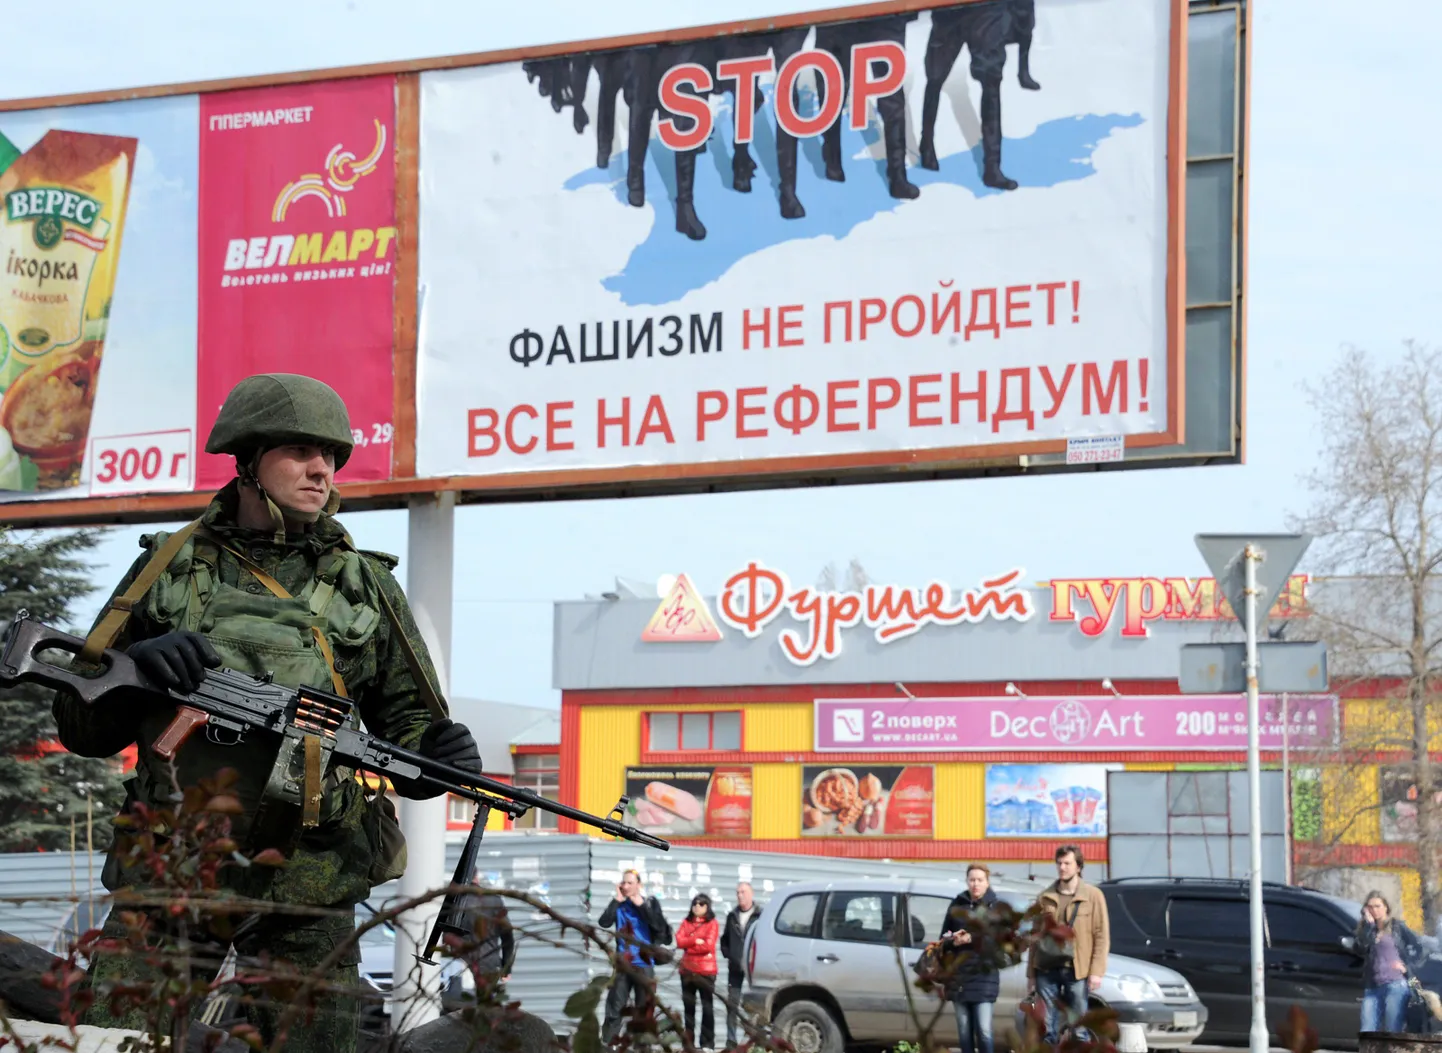 Vene sõdur patrullib Sevastopolis «referendumile» kutsuva plakati juures.